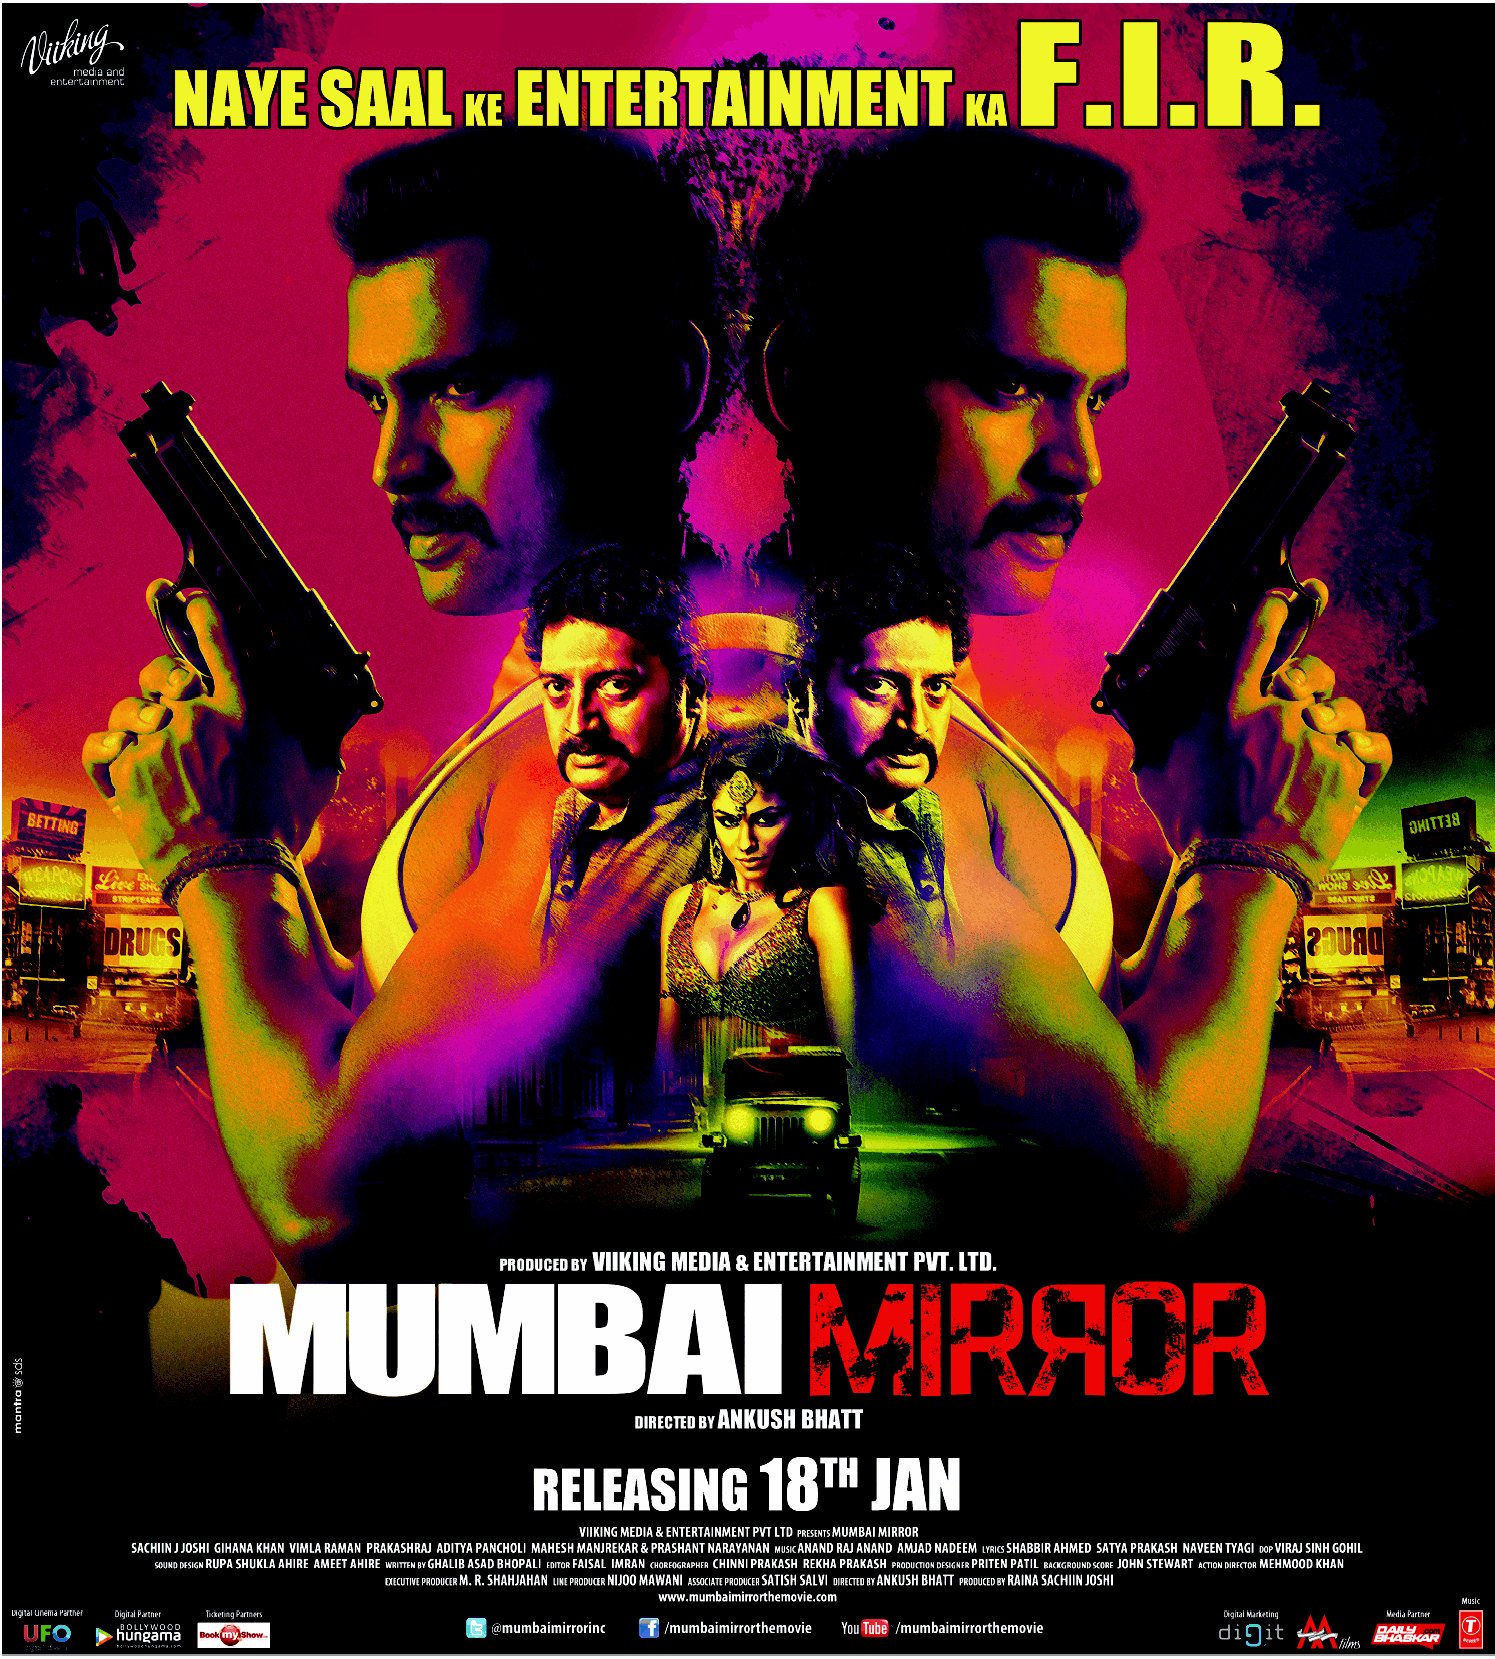 Mumbai Mirror - Movie Poster #2 (Original)